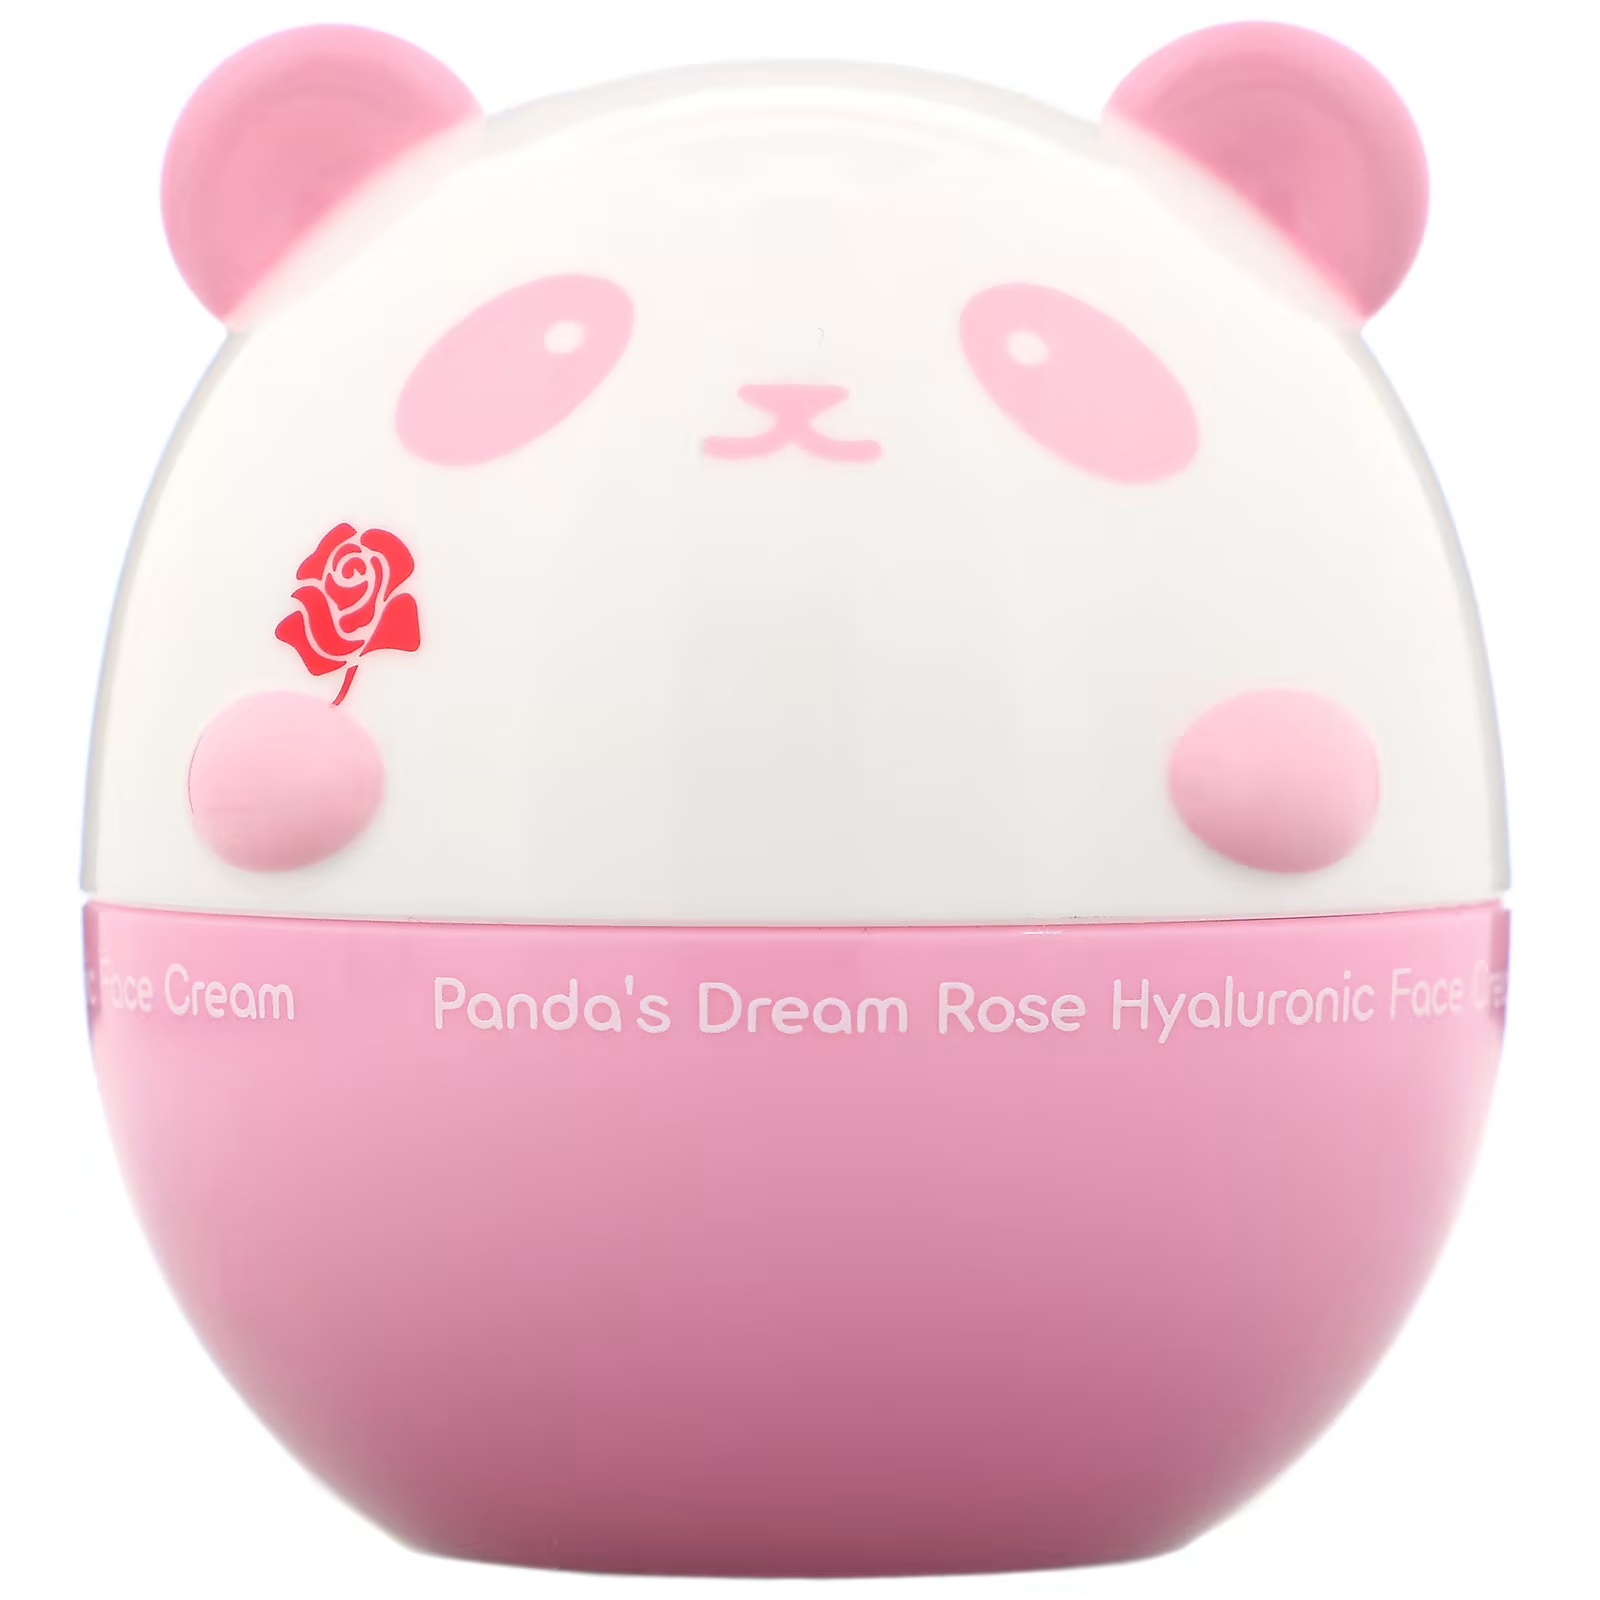 Гиалуроновый крем для лица Tony Moly Panda's Dream Rose, 1,76 унции (50 г) tony moly panda s dream стик для глаз so cool 0 32 унции 9 г